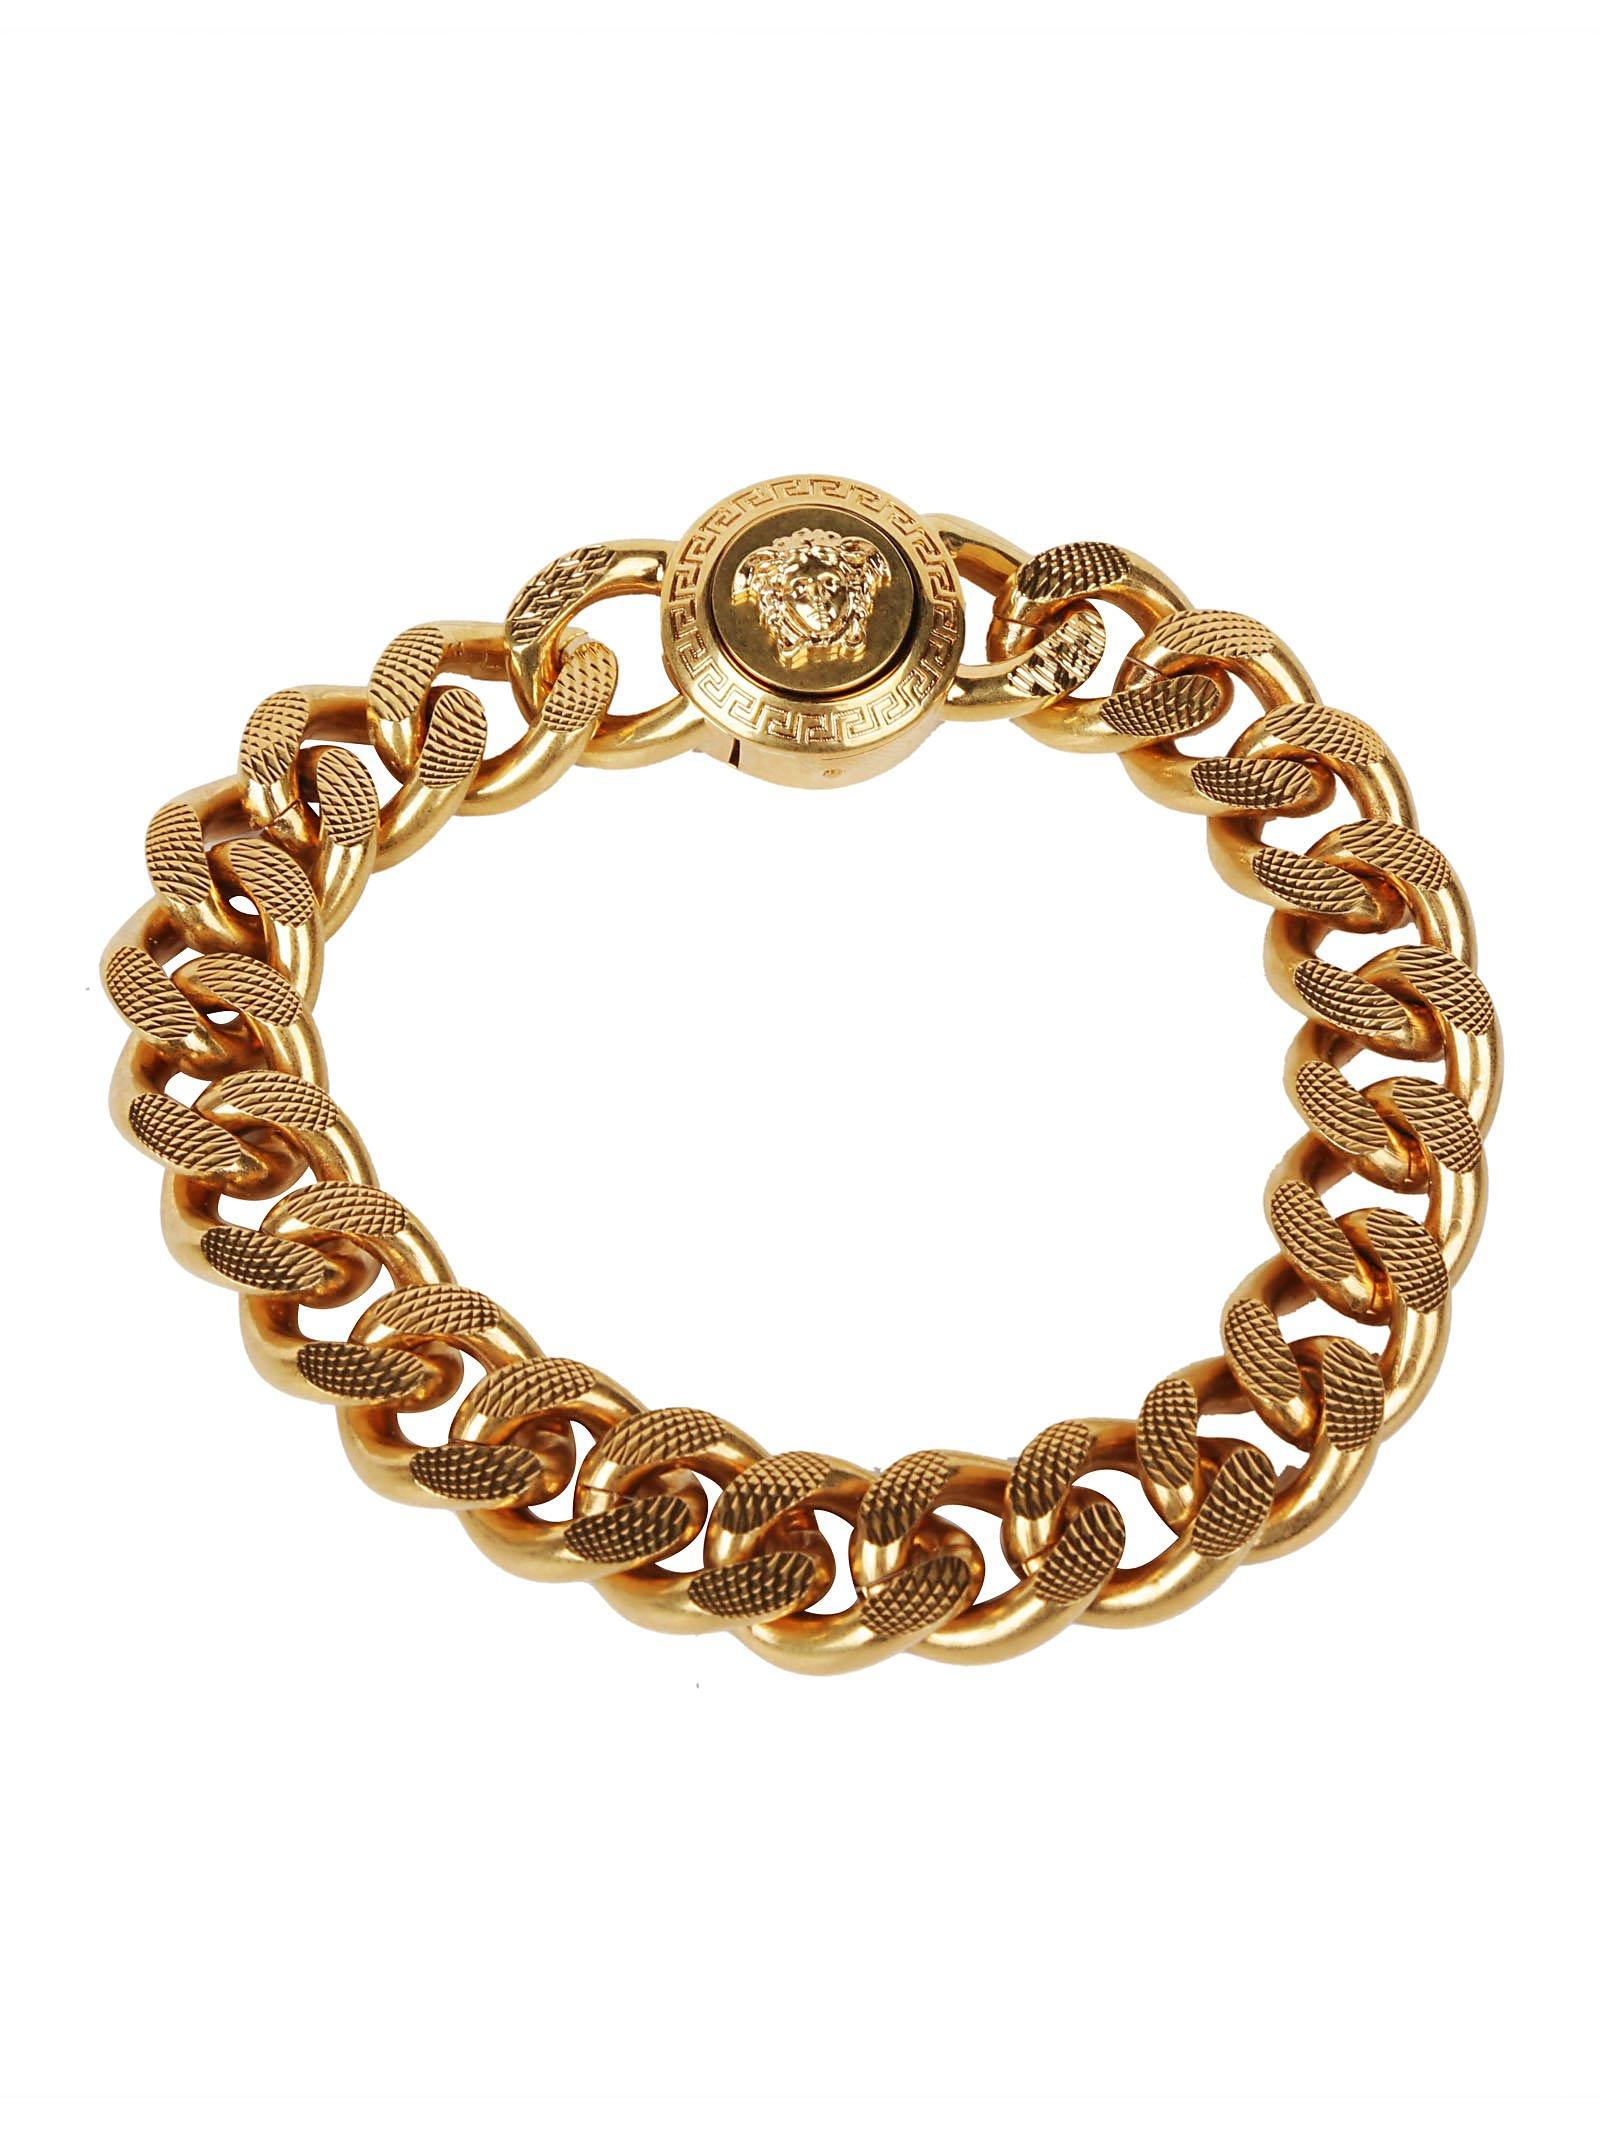 Versace Medusa Chain Bracelet in Gold (Metallic) for Men - Lyst